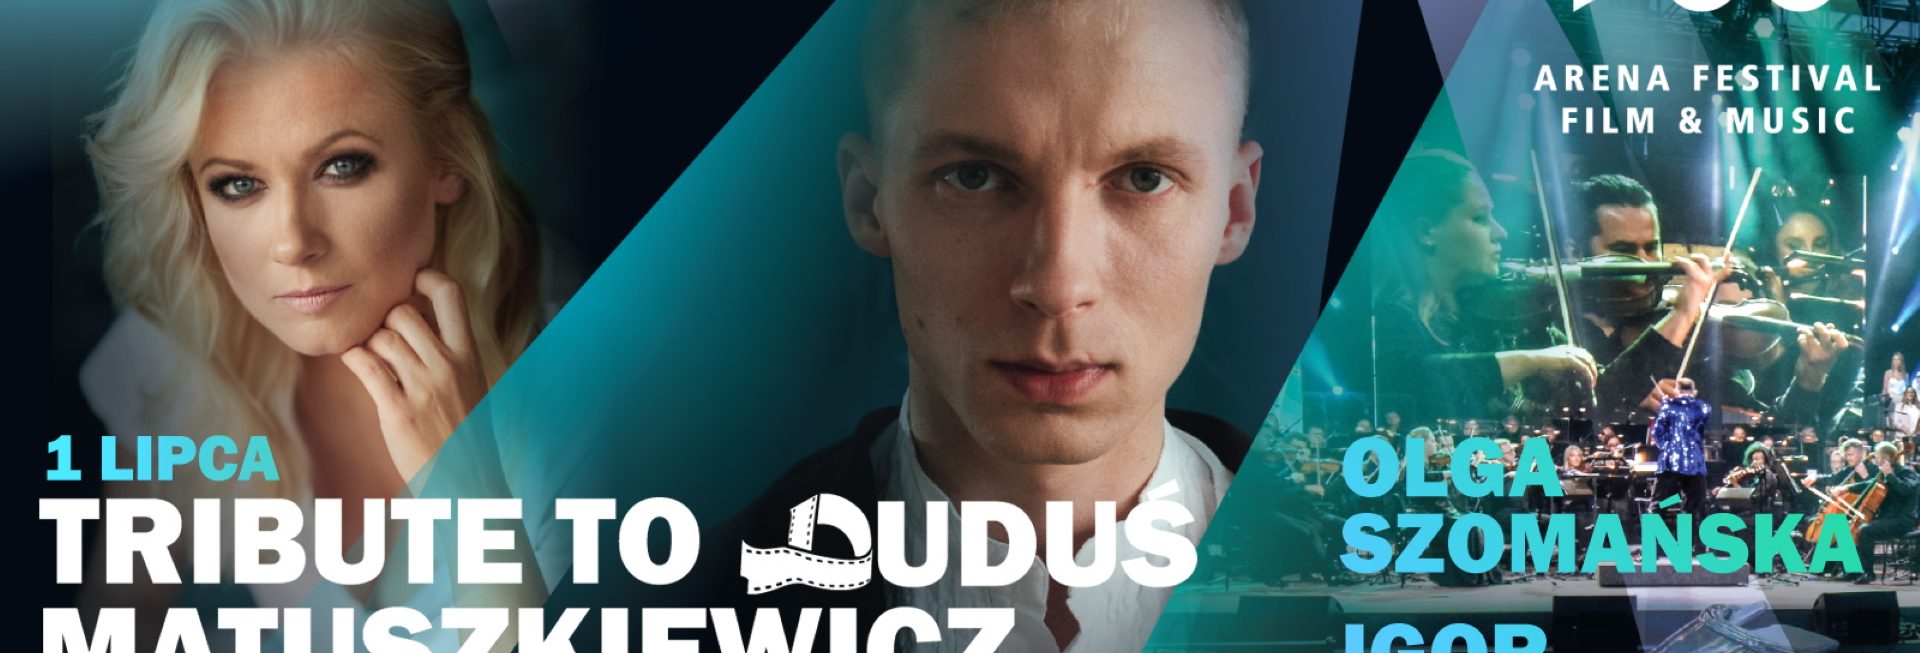 Plakat graficzny zapraszający do Ostródy na koncert Arena Festival film & music – Tribute to Duduś Matuszkiewicz w wykonaniu Olgi Szomańskiej i Igora Herbuta.  